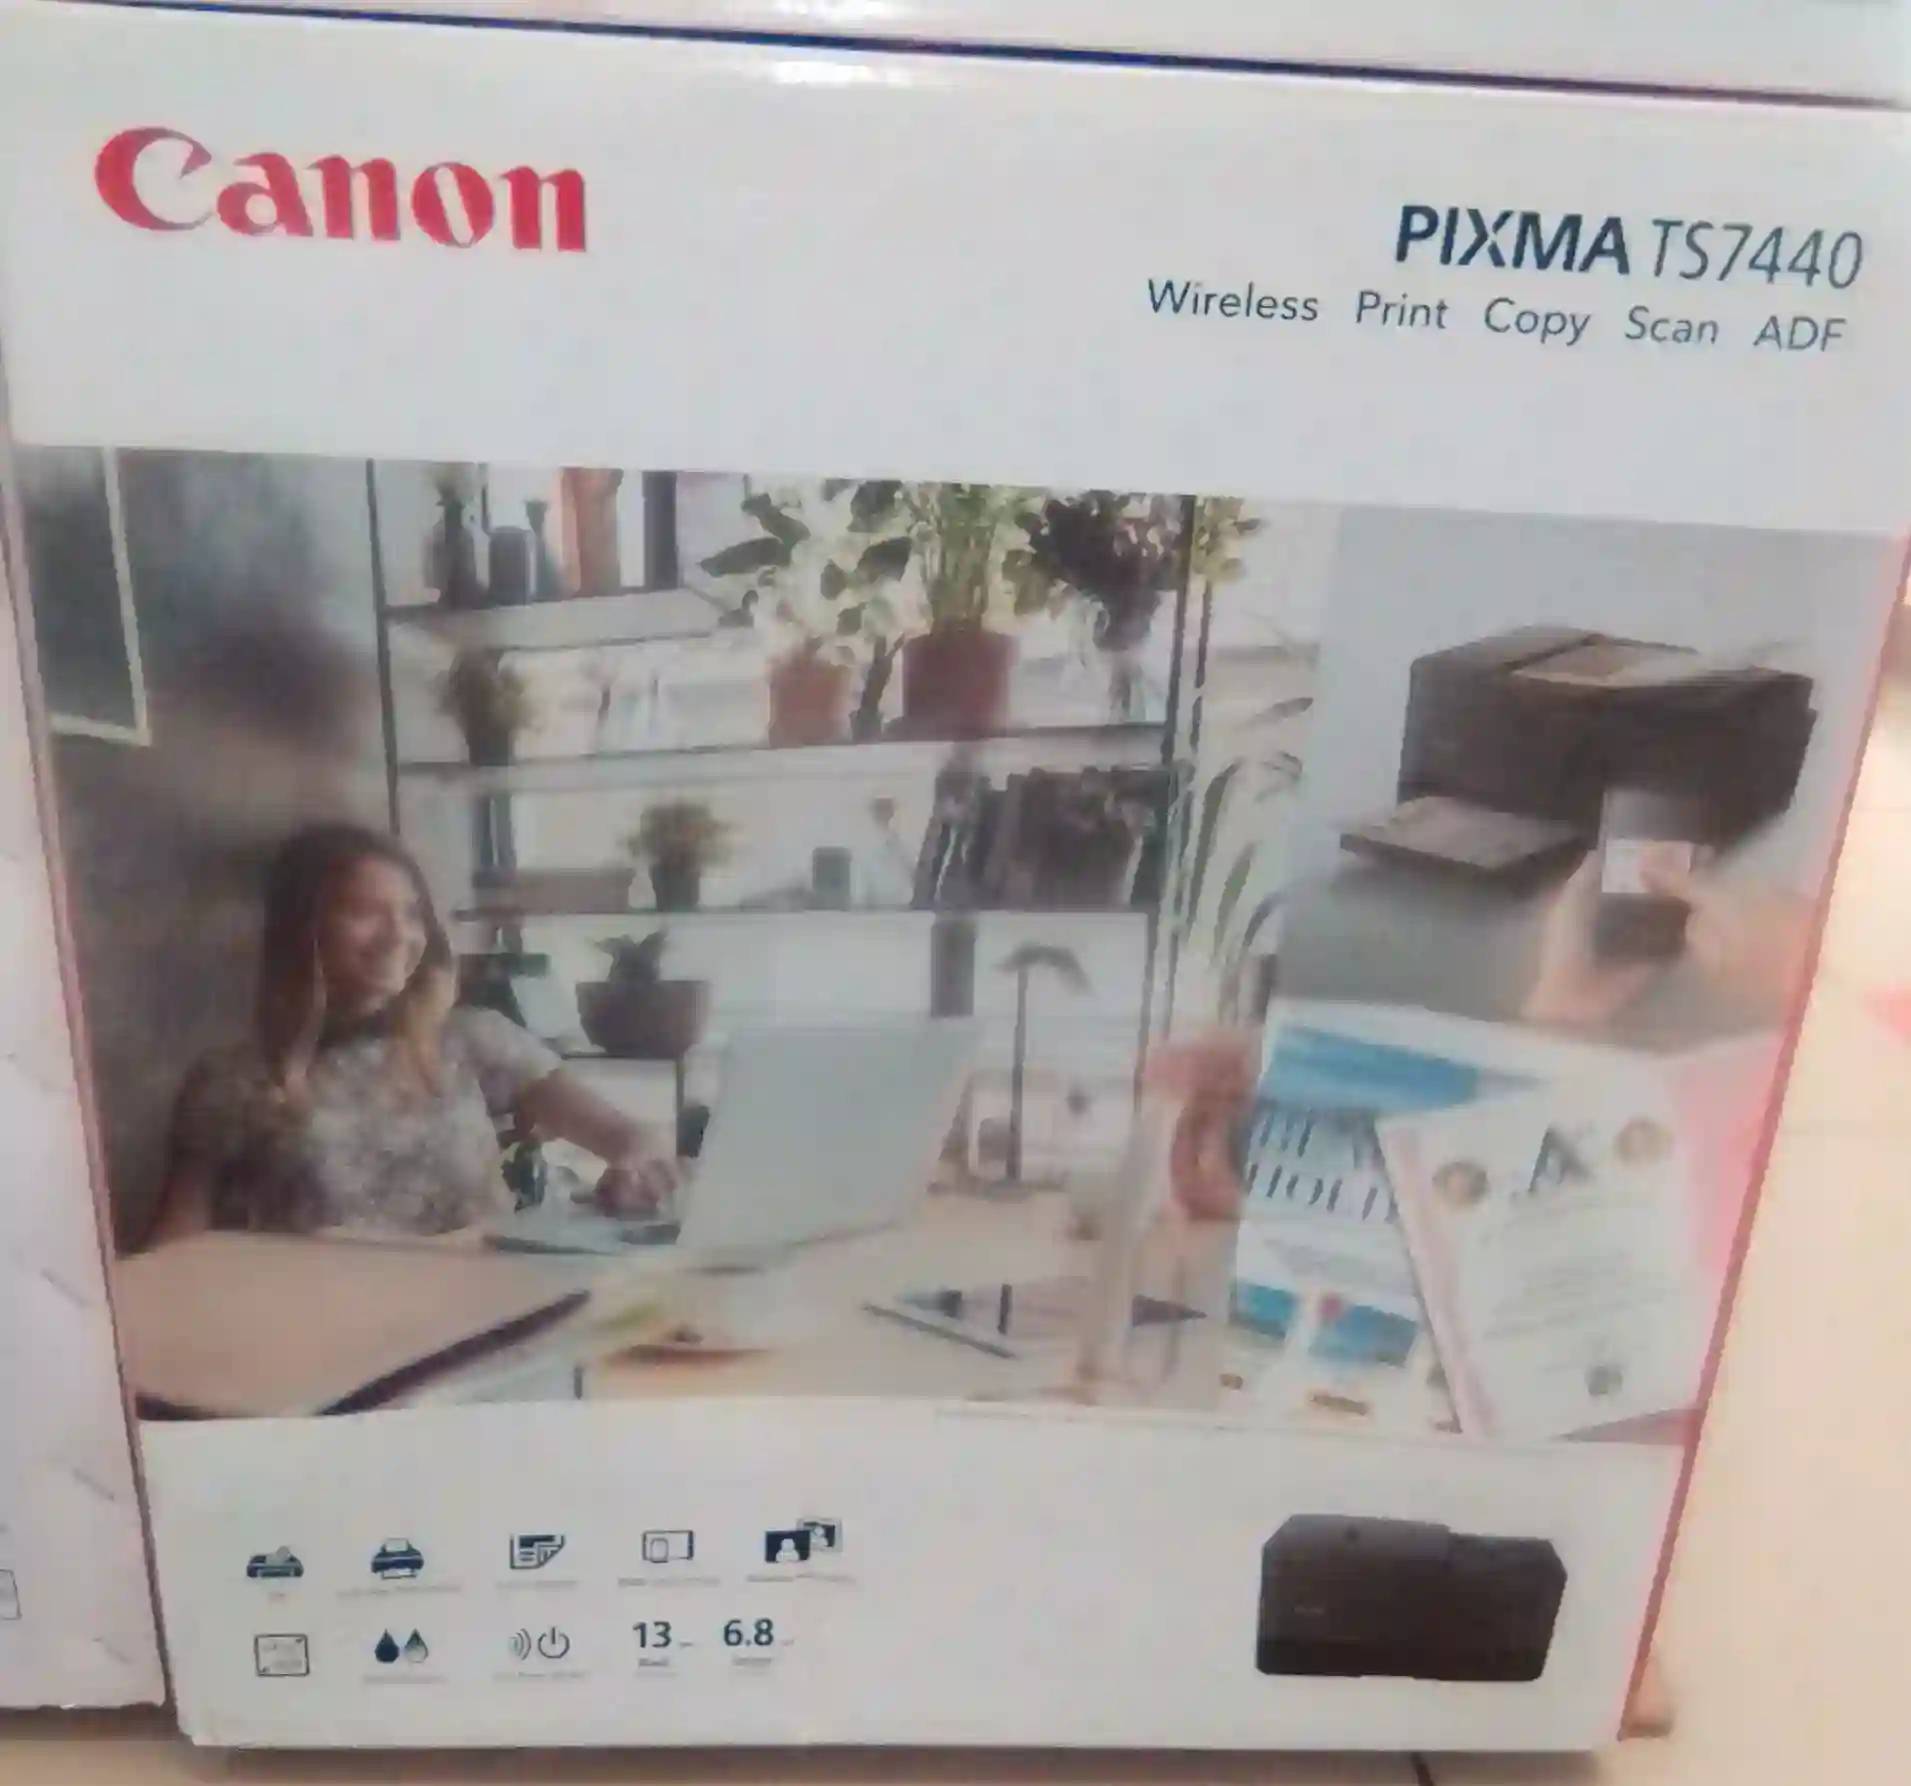 Canon PIXMA TS 7740 Printer